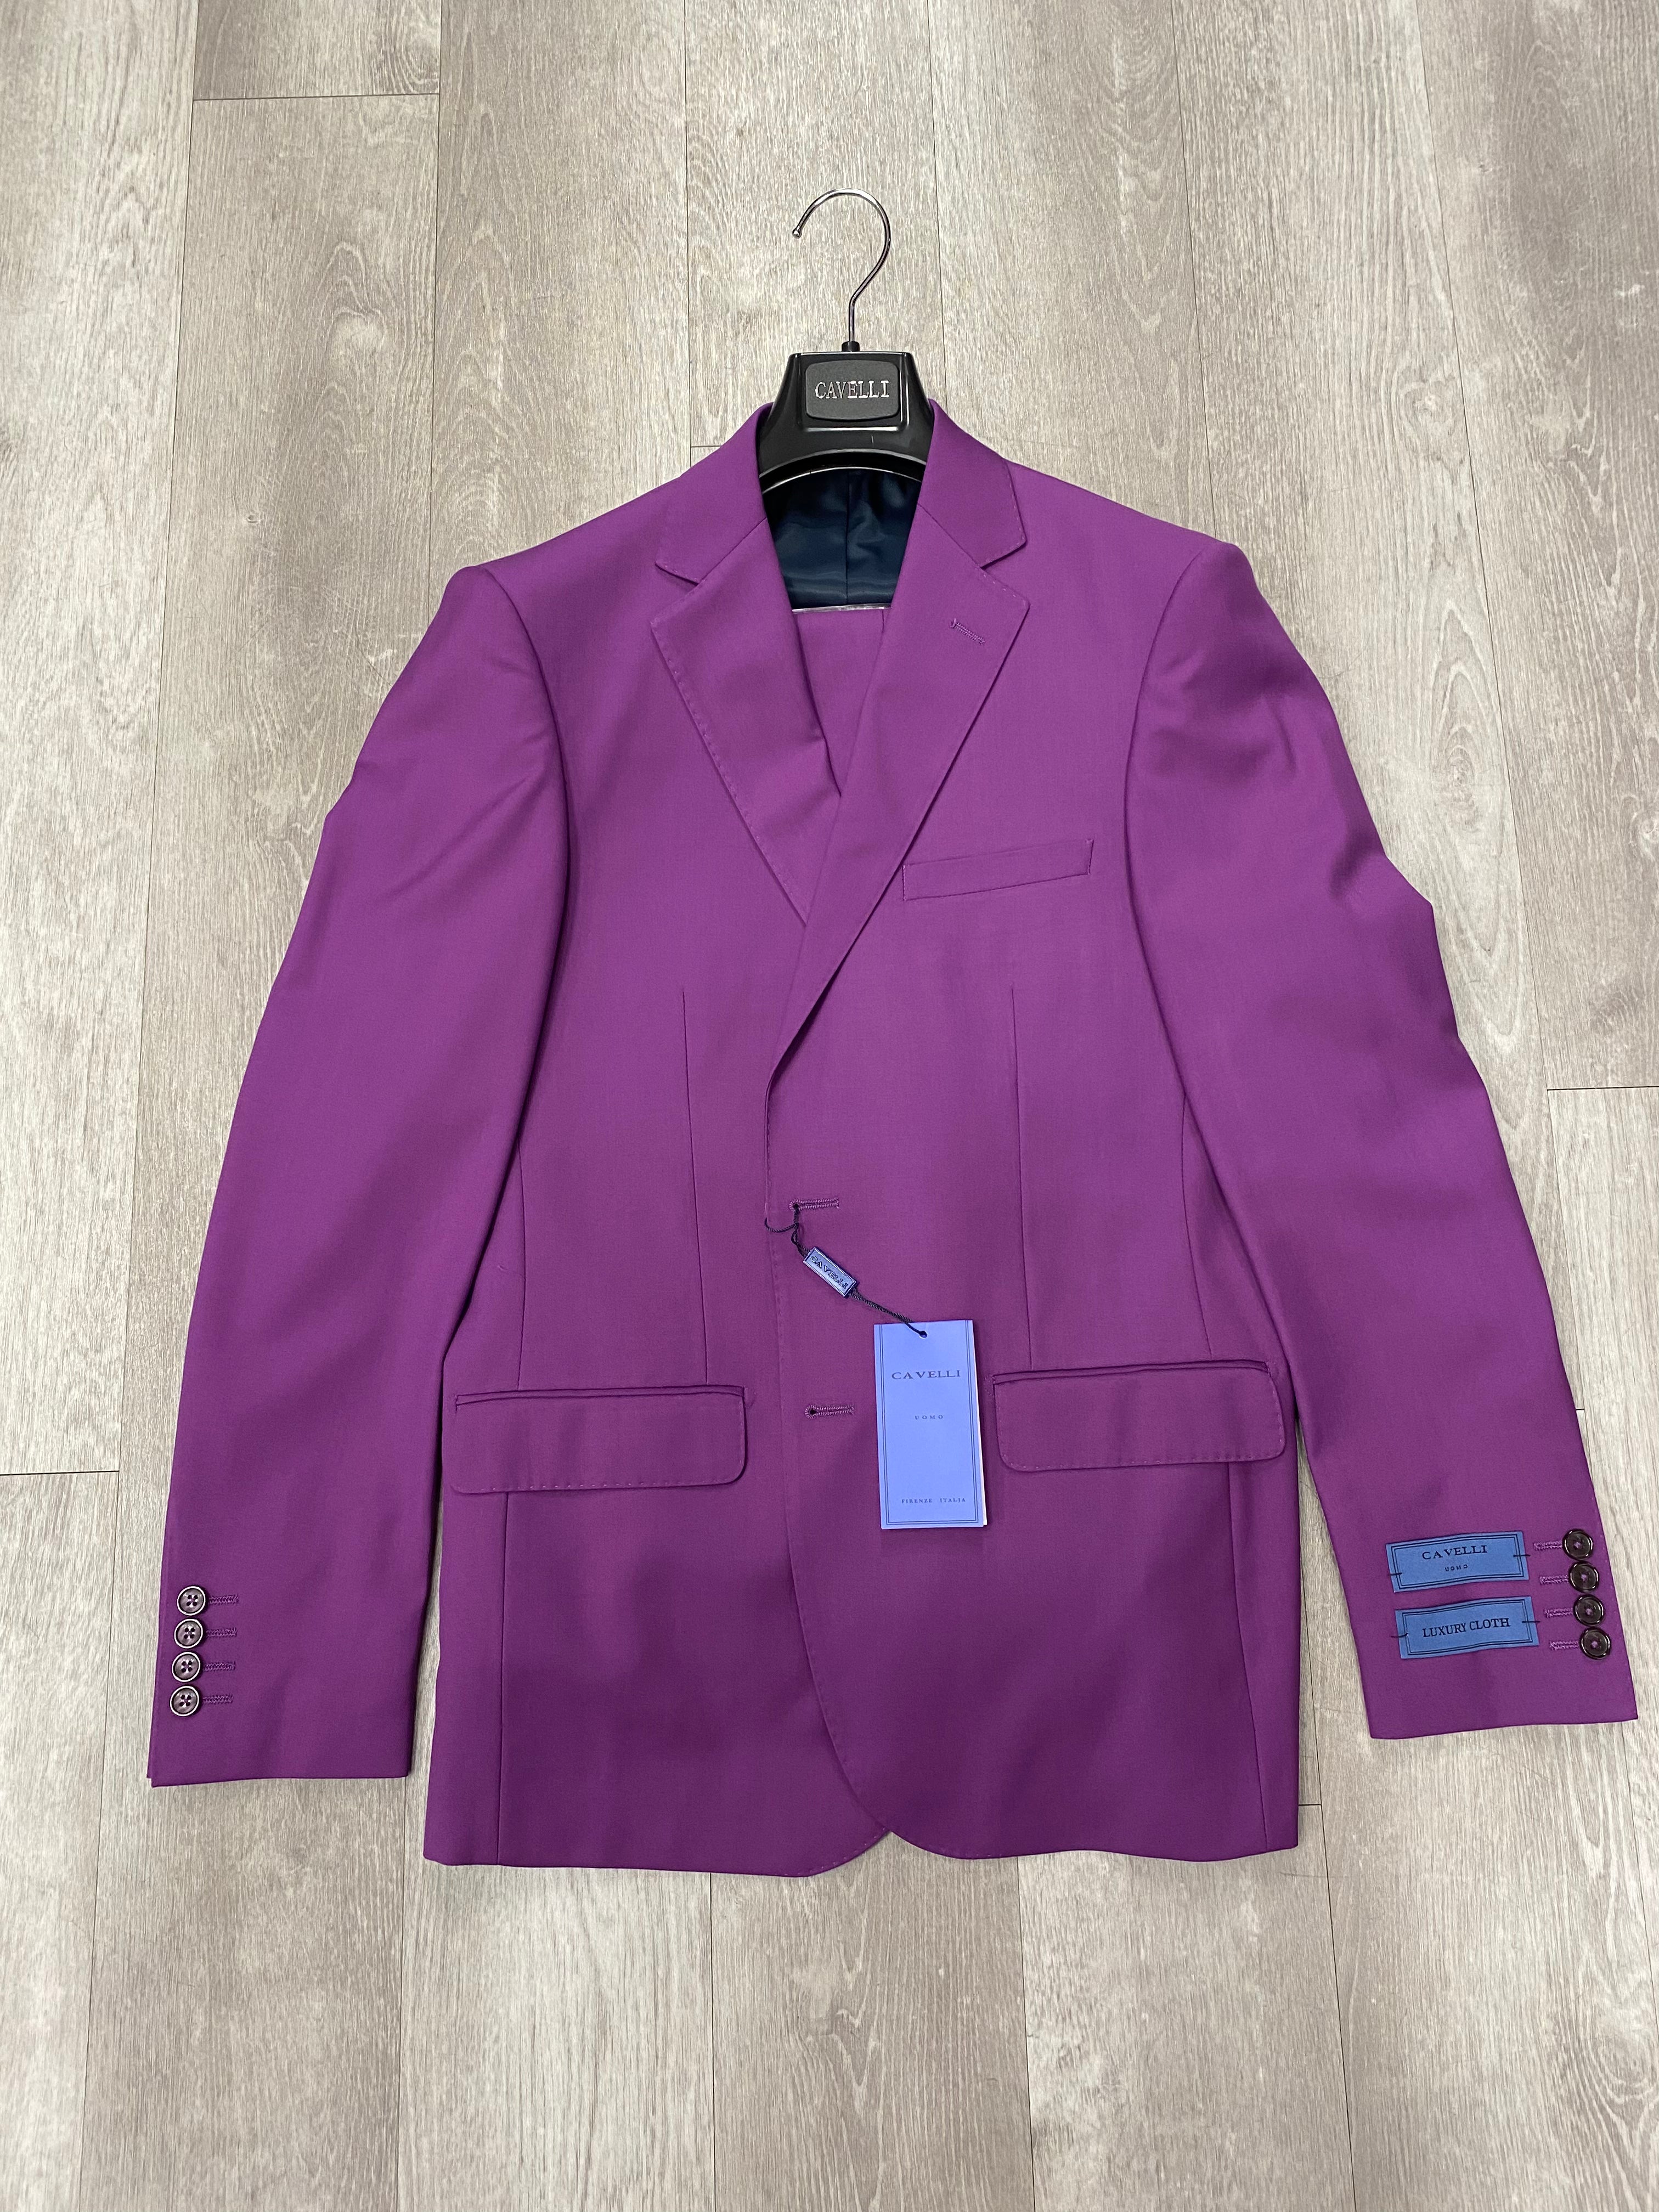 Cavelli Uomo Porto Slim Fit Suit 3477/36 Purple – Unique Design Menswear